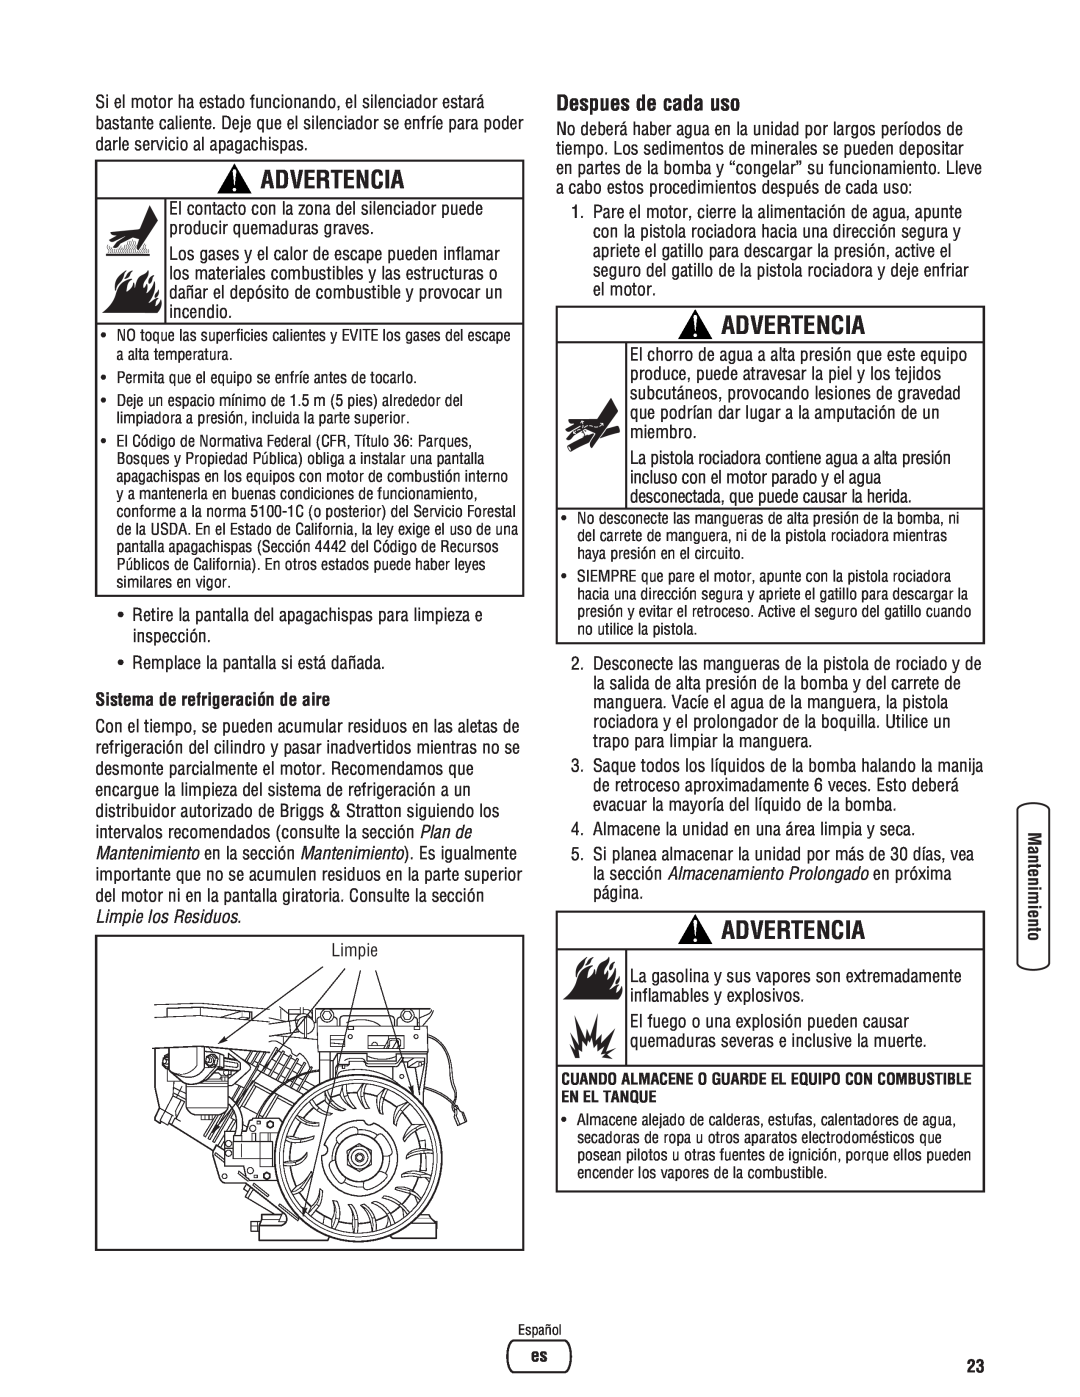 Briggs & Stratton 020364-0 manual Advertencia, Despues de cada uso, Sistema de refrigeración de aire 